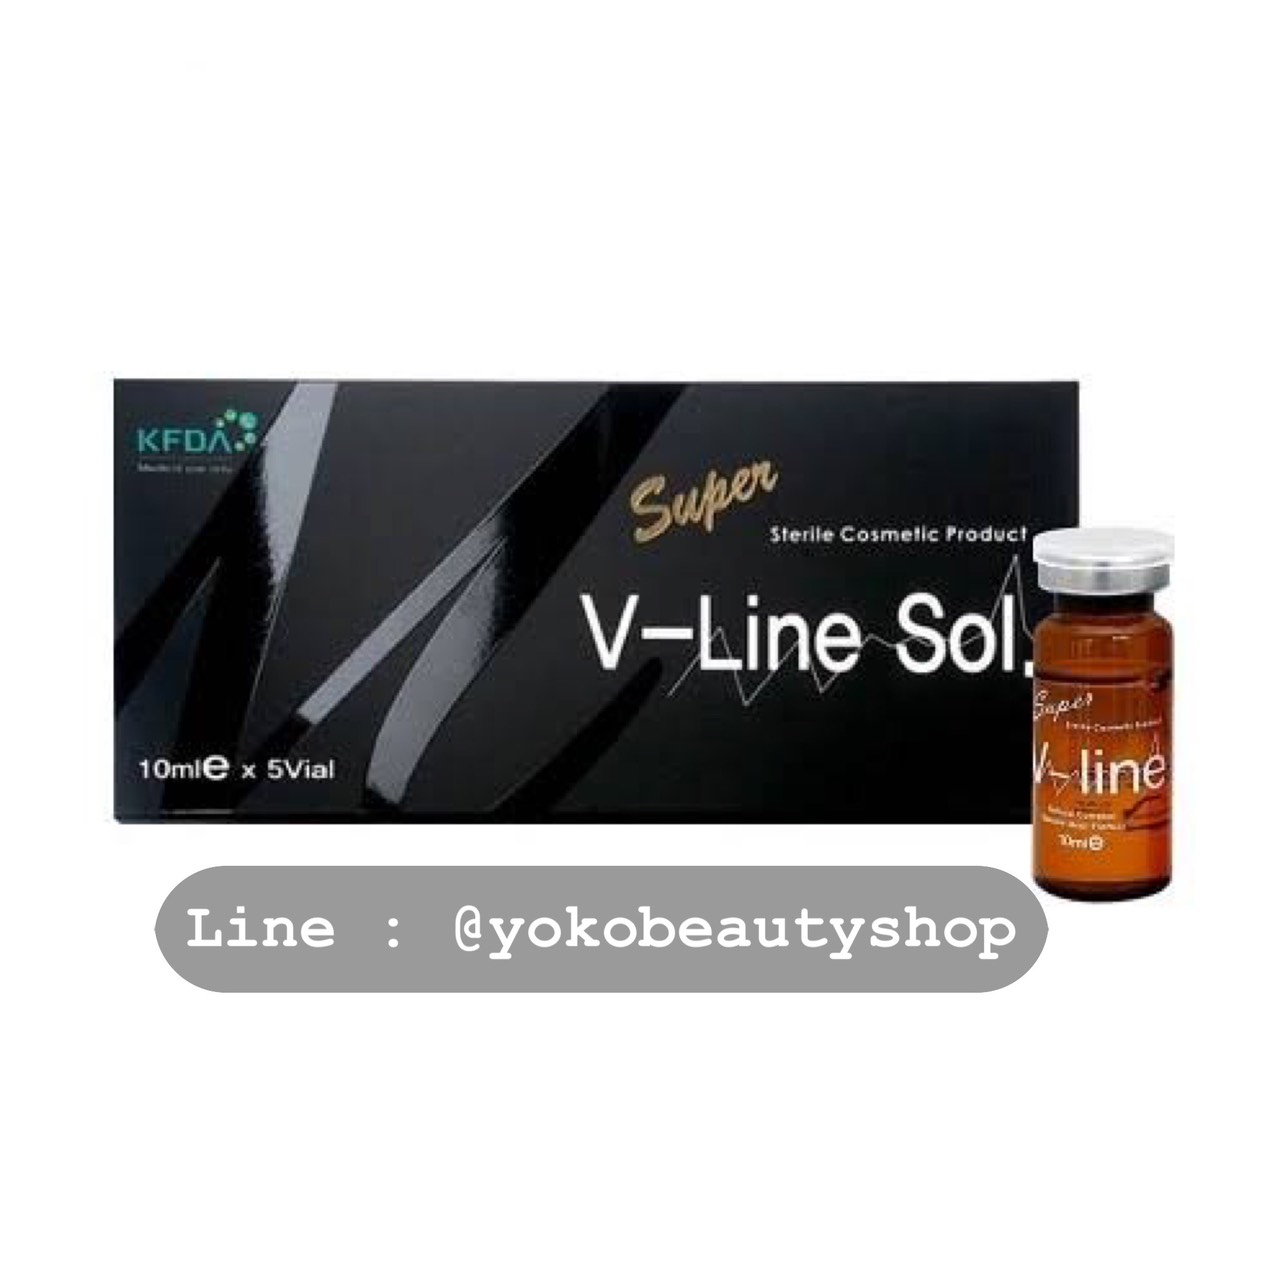 รูปภาพที่5 ของสินค้า : Super V-Line Sol. Made in Korea แฟตลดแก้ม